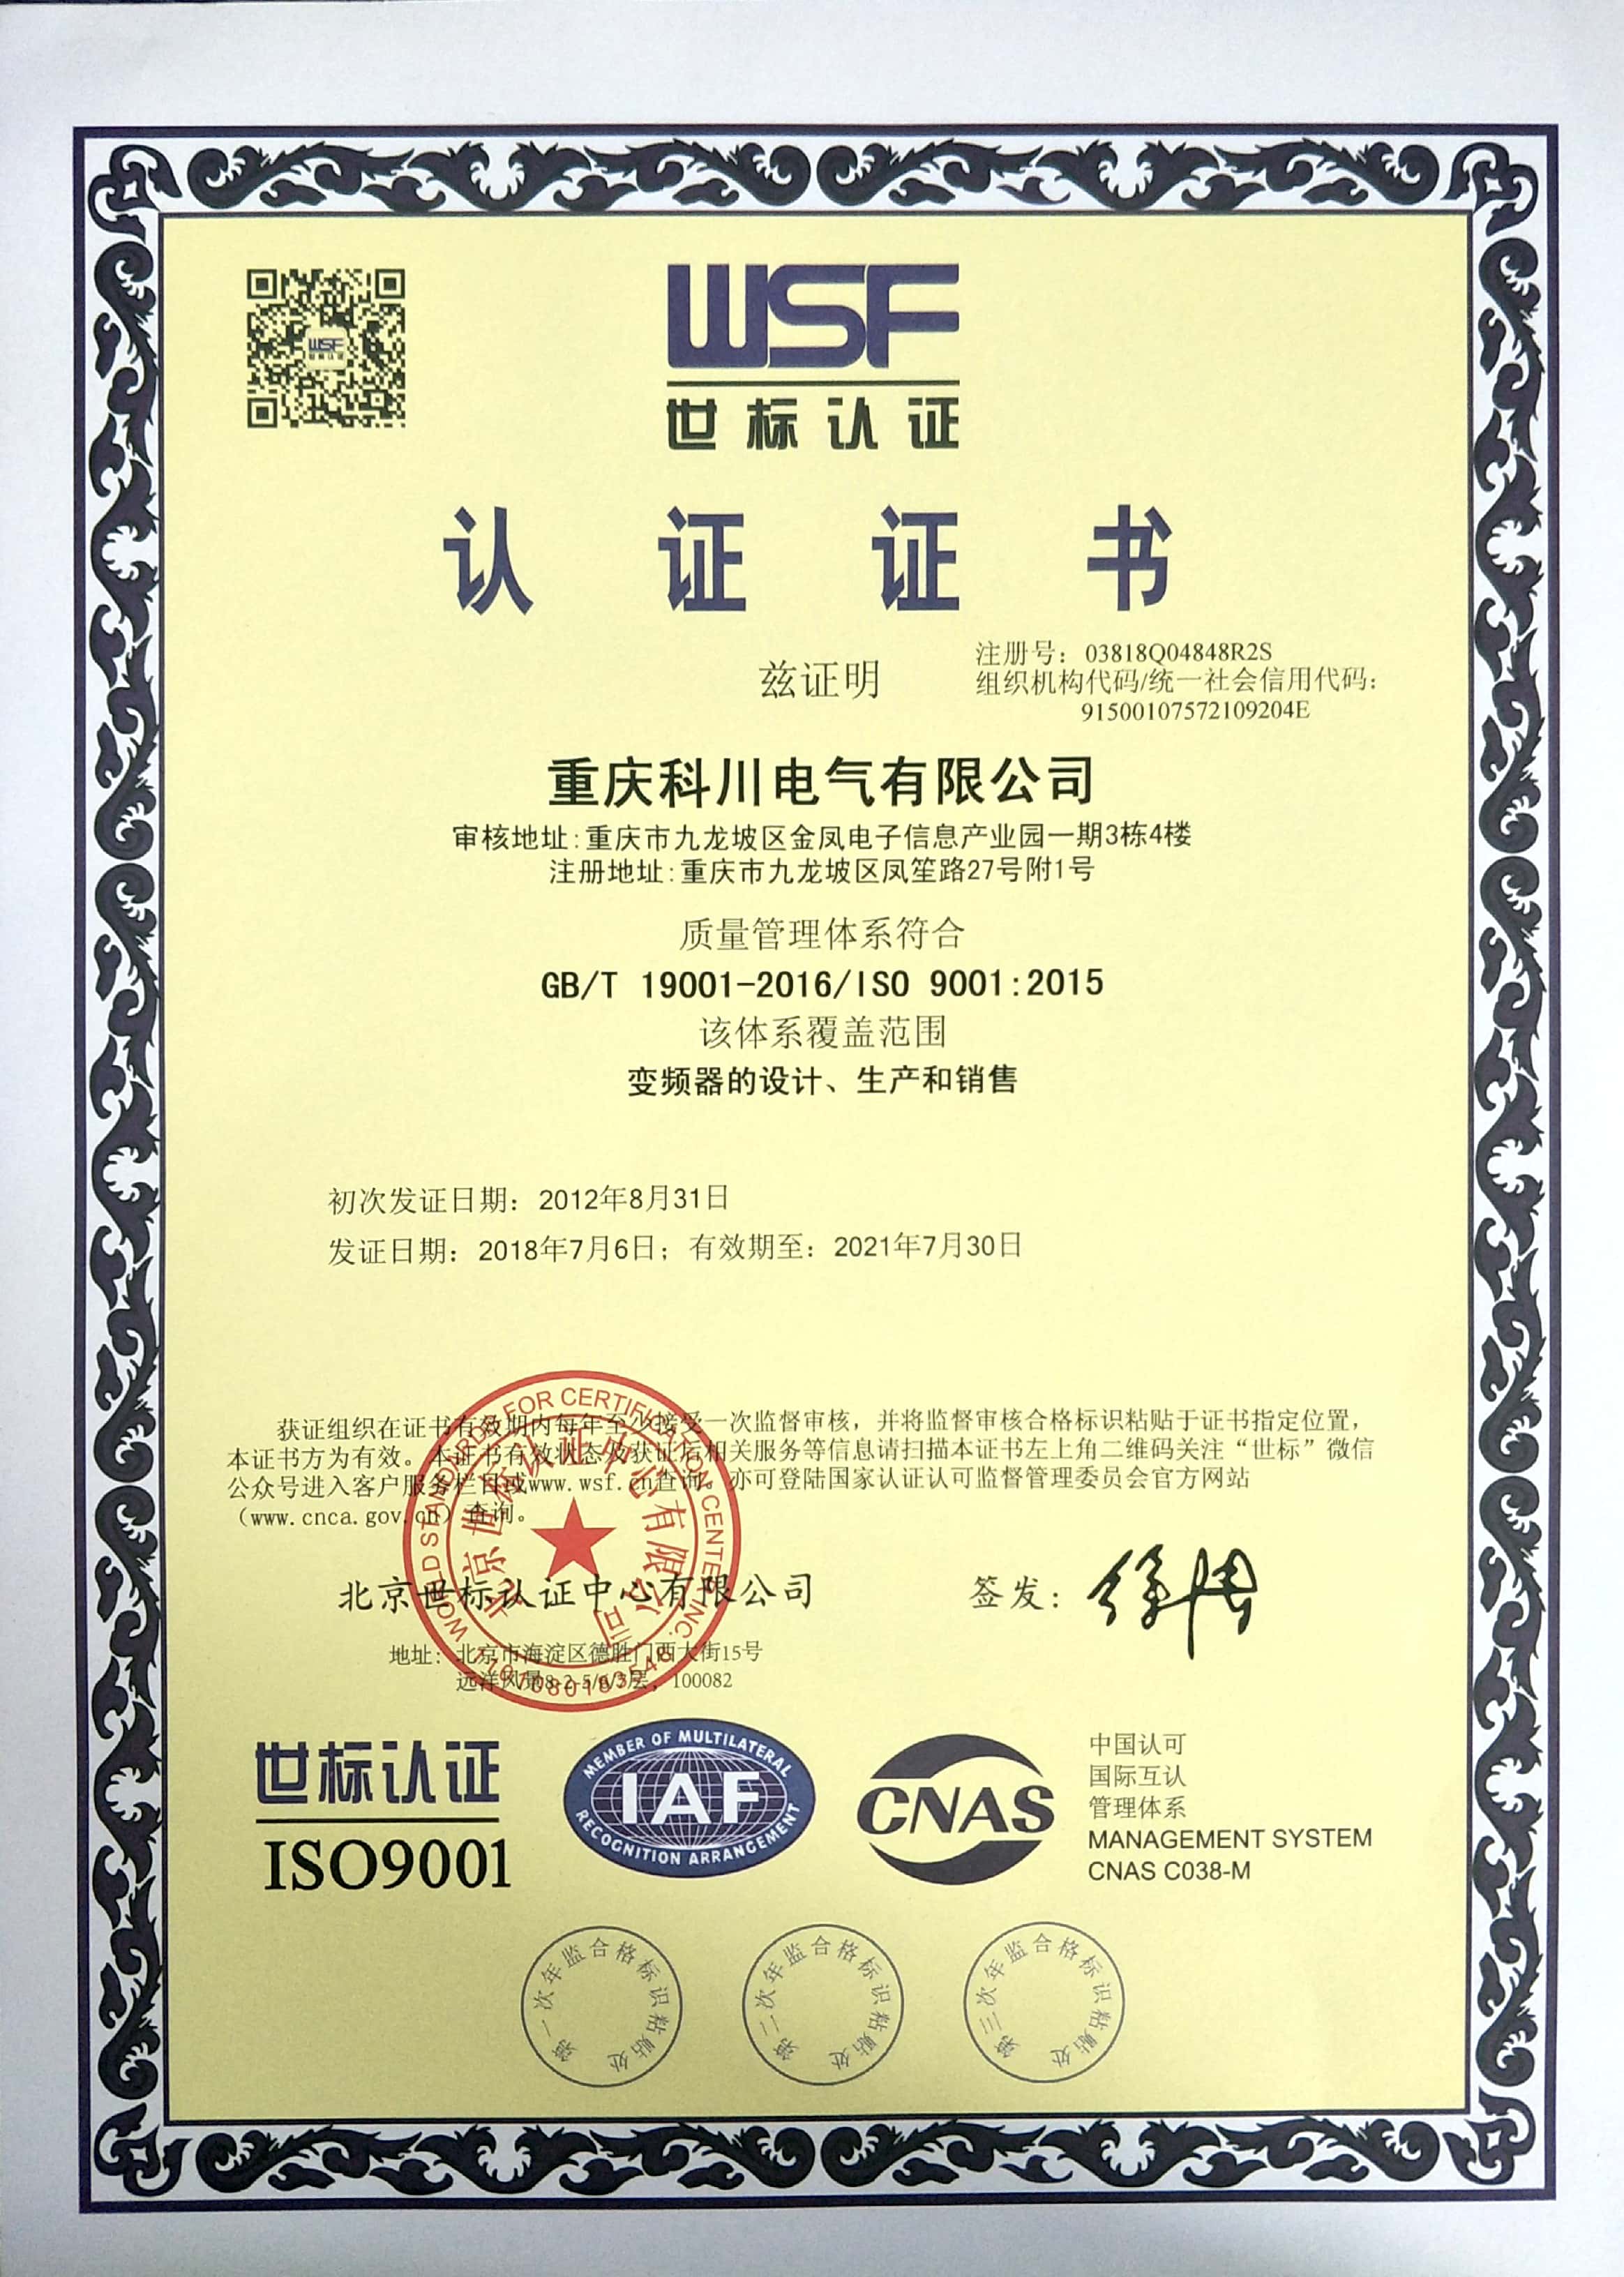 KC系列变频器产品获《质量管理体系》认证